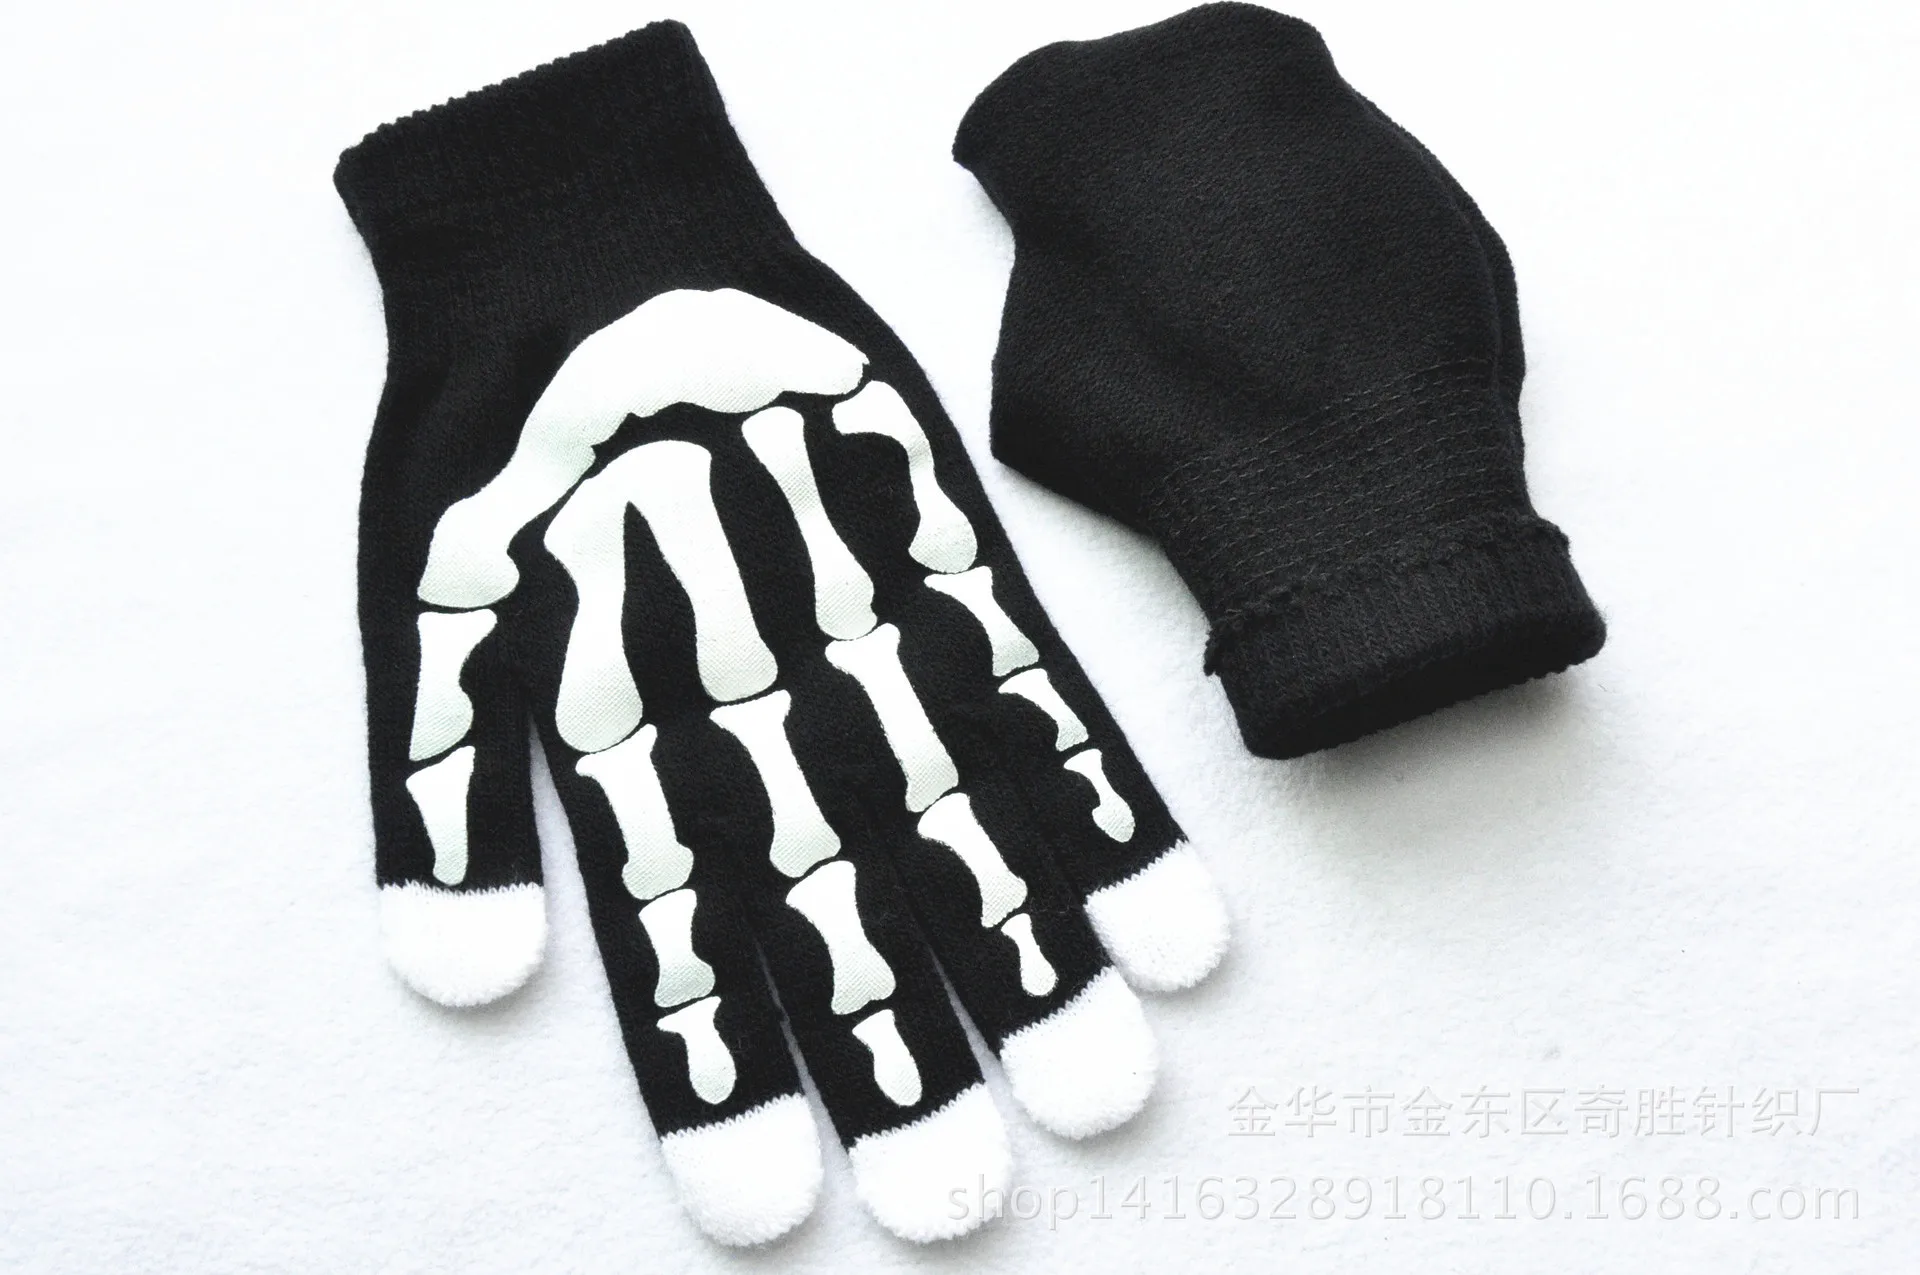 Зимние перчатки для мужчин мягкие вязаные руки скелета с принтом перчатки хип поп молодых мужчин теплые плотные Перчатки хорошего качества